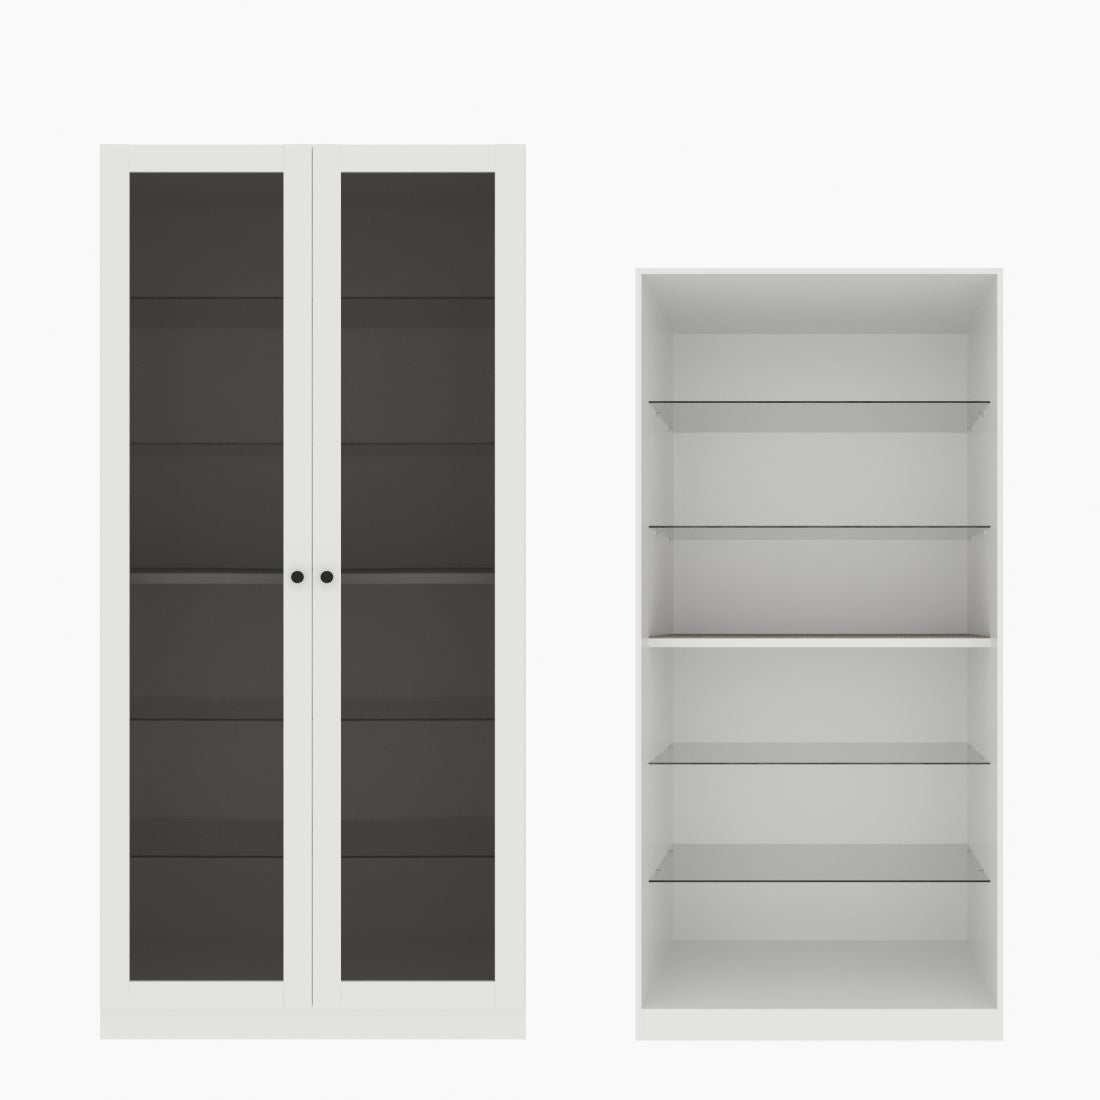 ตู้โชว์ชั้นกระจก OP-H ขนาด 100 ซม. รุ่น Blox สีขาว&กระจกชาดำ01